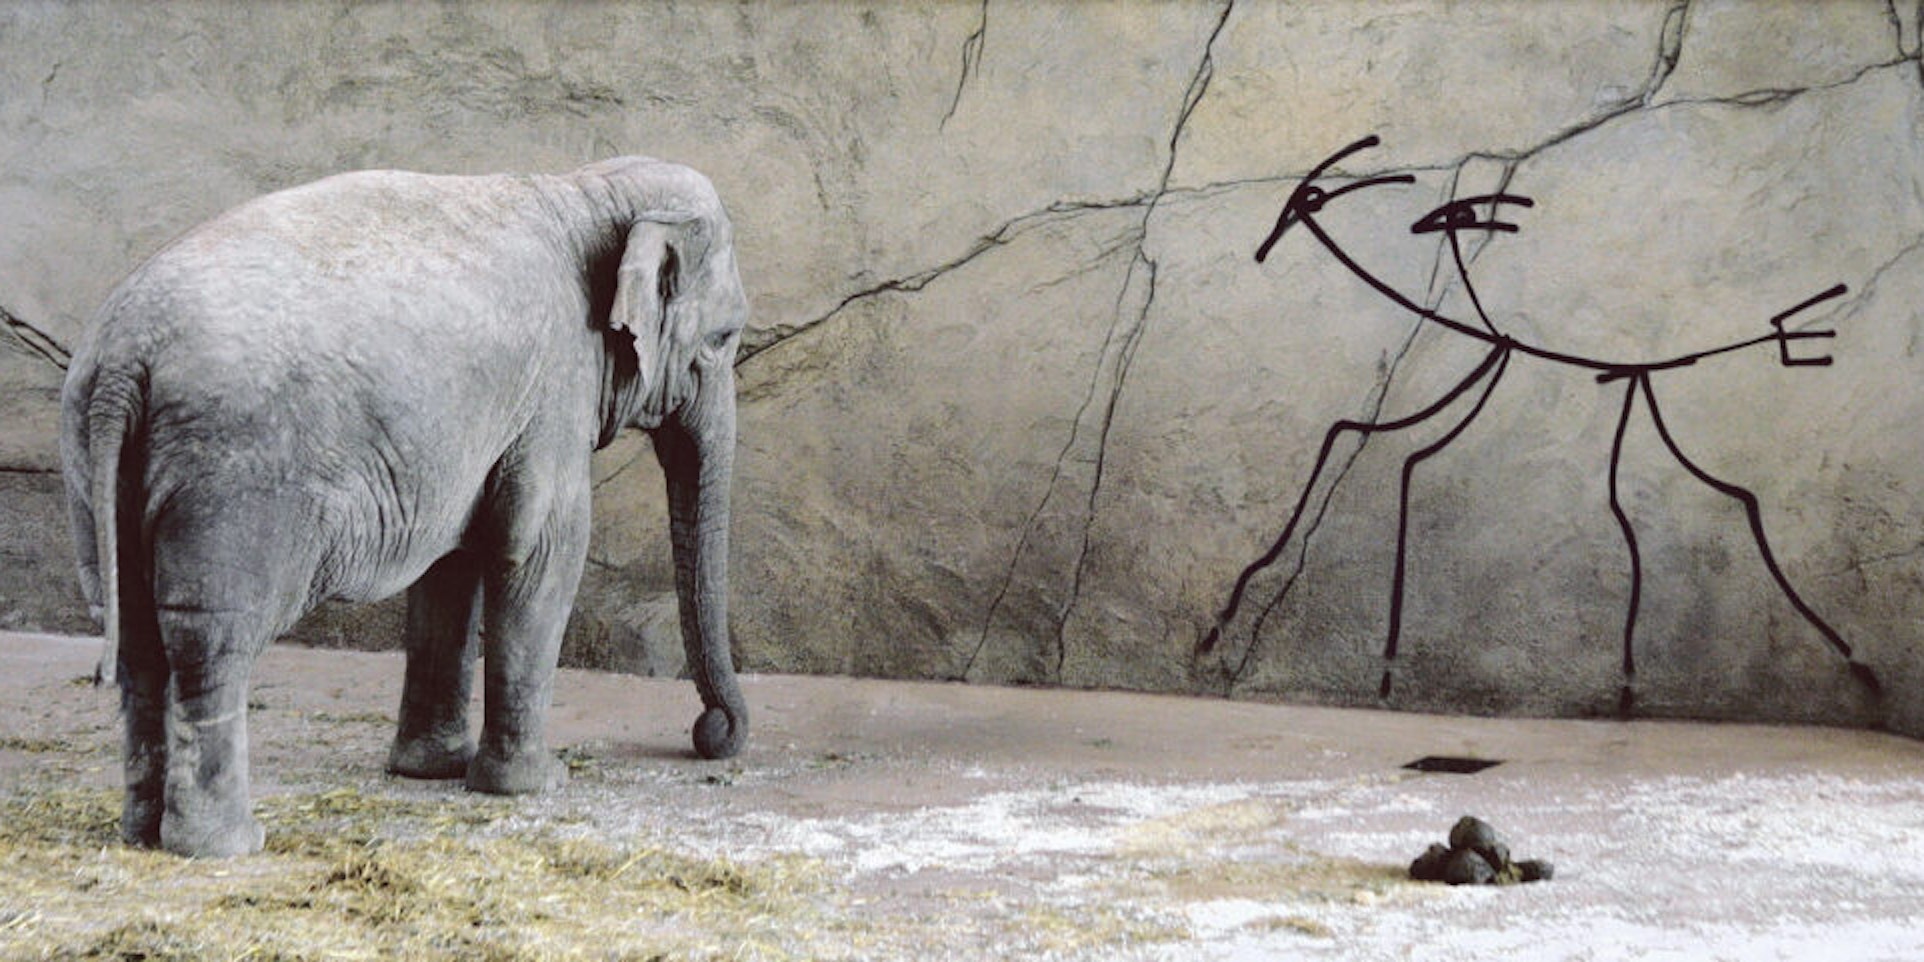 Seit 2010 findet sich dieses ganz legale Graffiti Harald Naegelis im Elefantenhaus des Kölner Zoos.